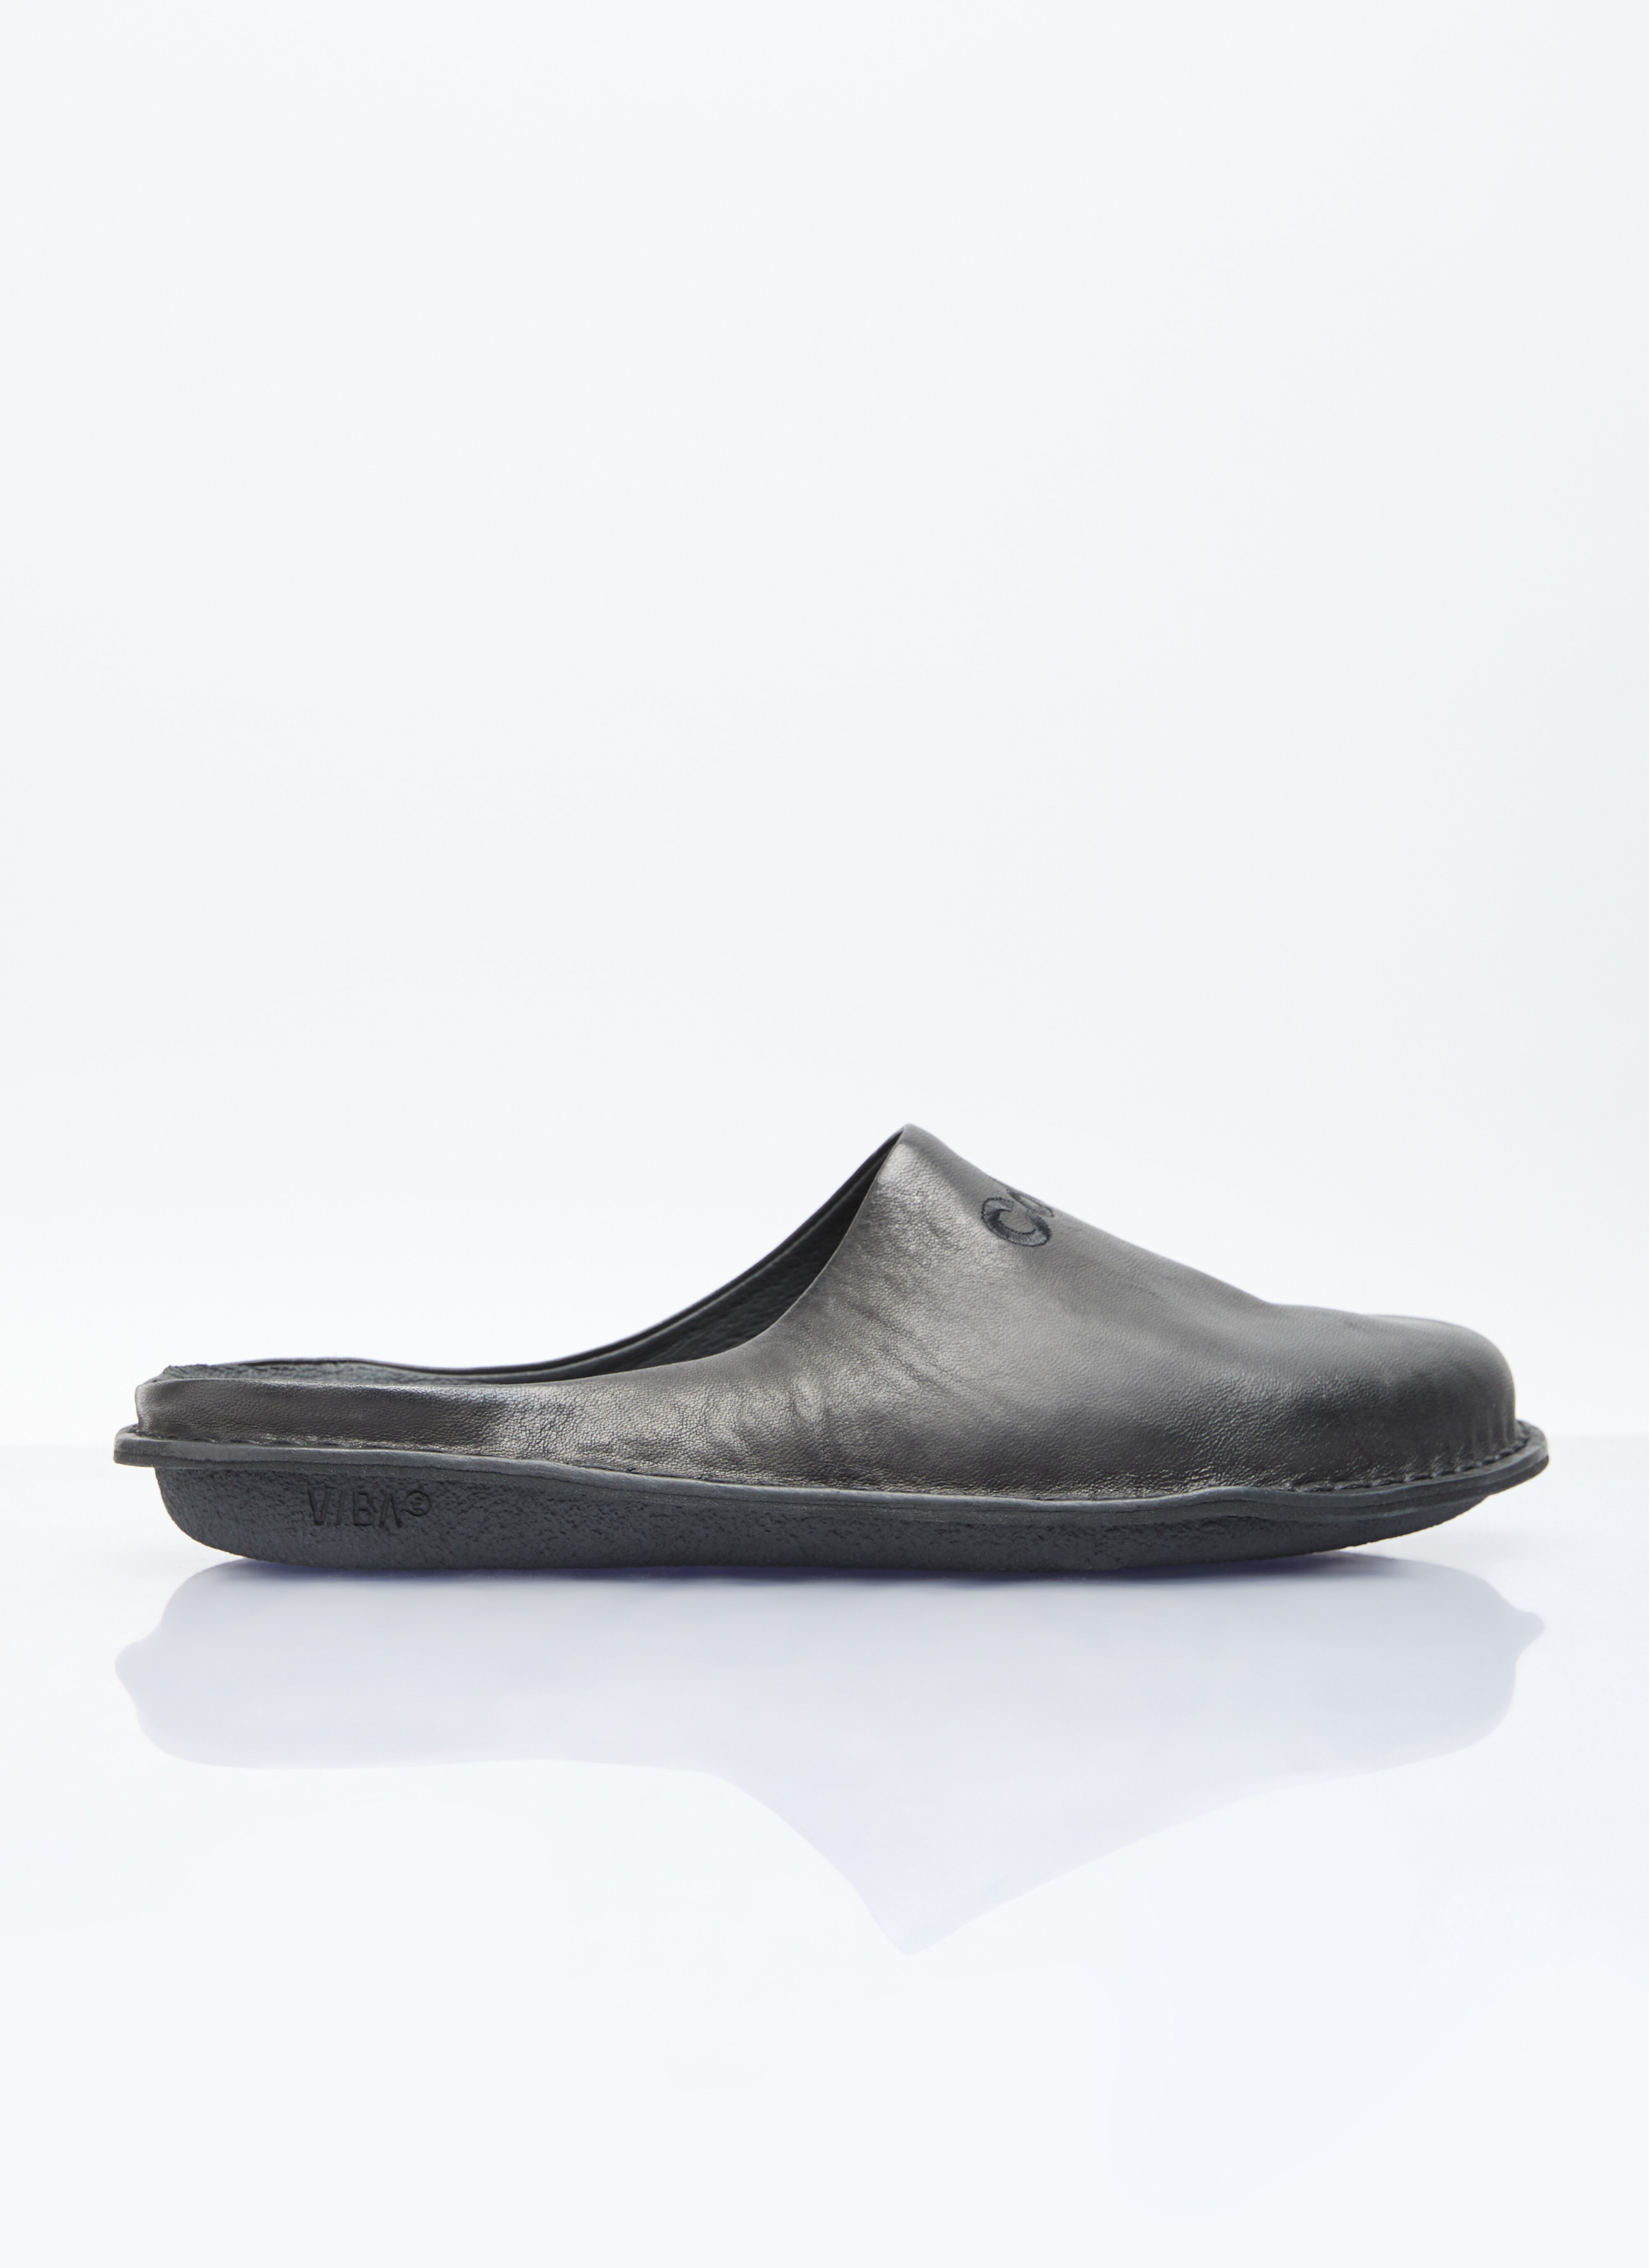 Comme des Garçons Homme Leather Slip-On Shoes Black cdh0156013